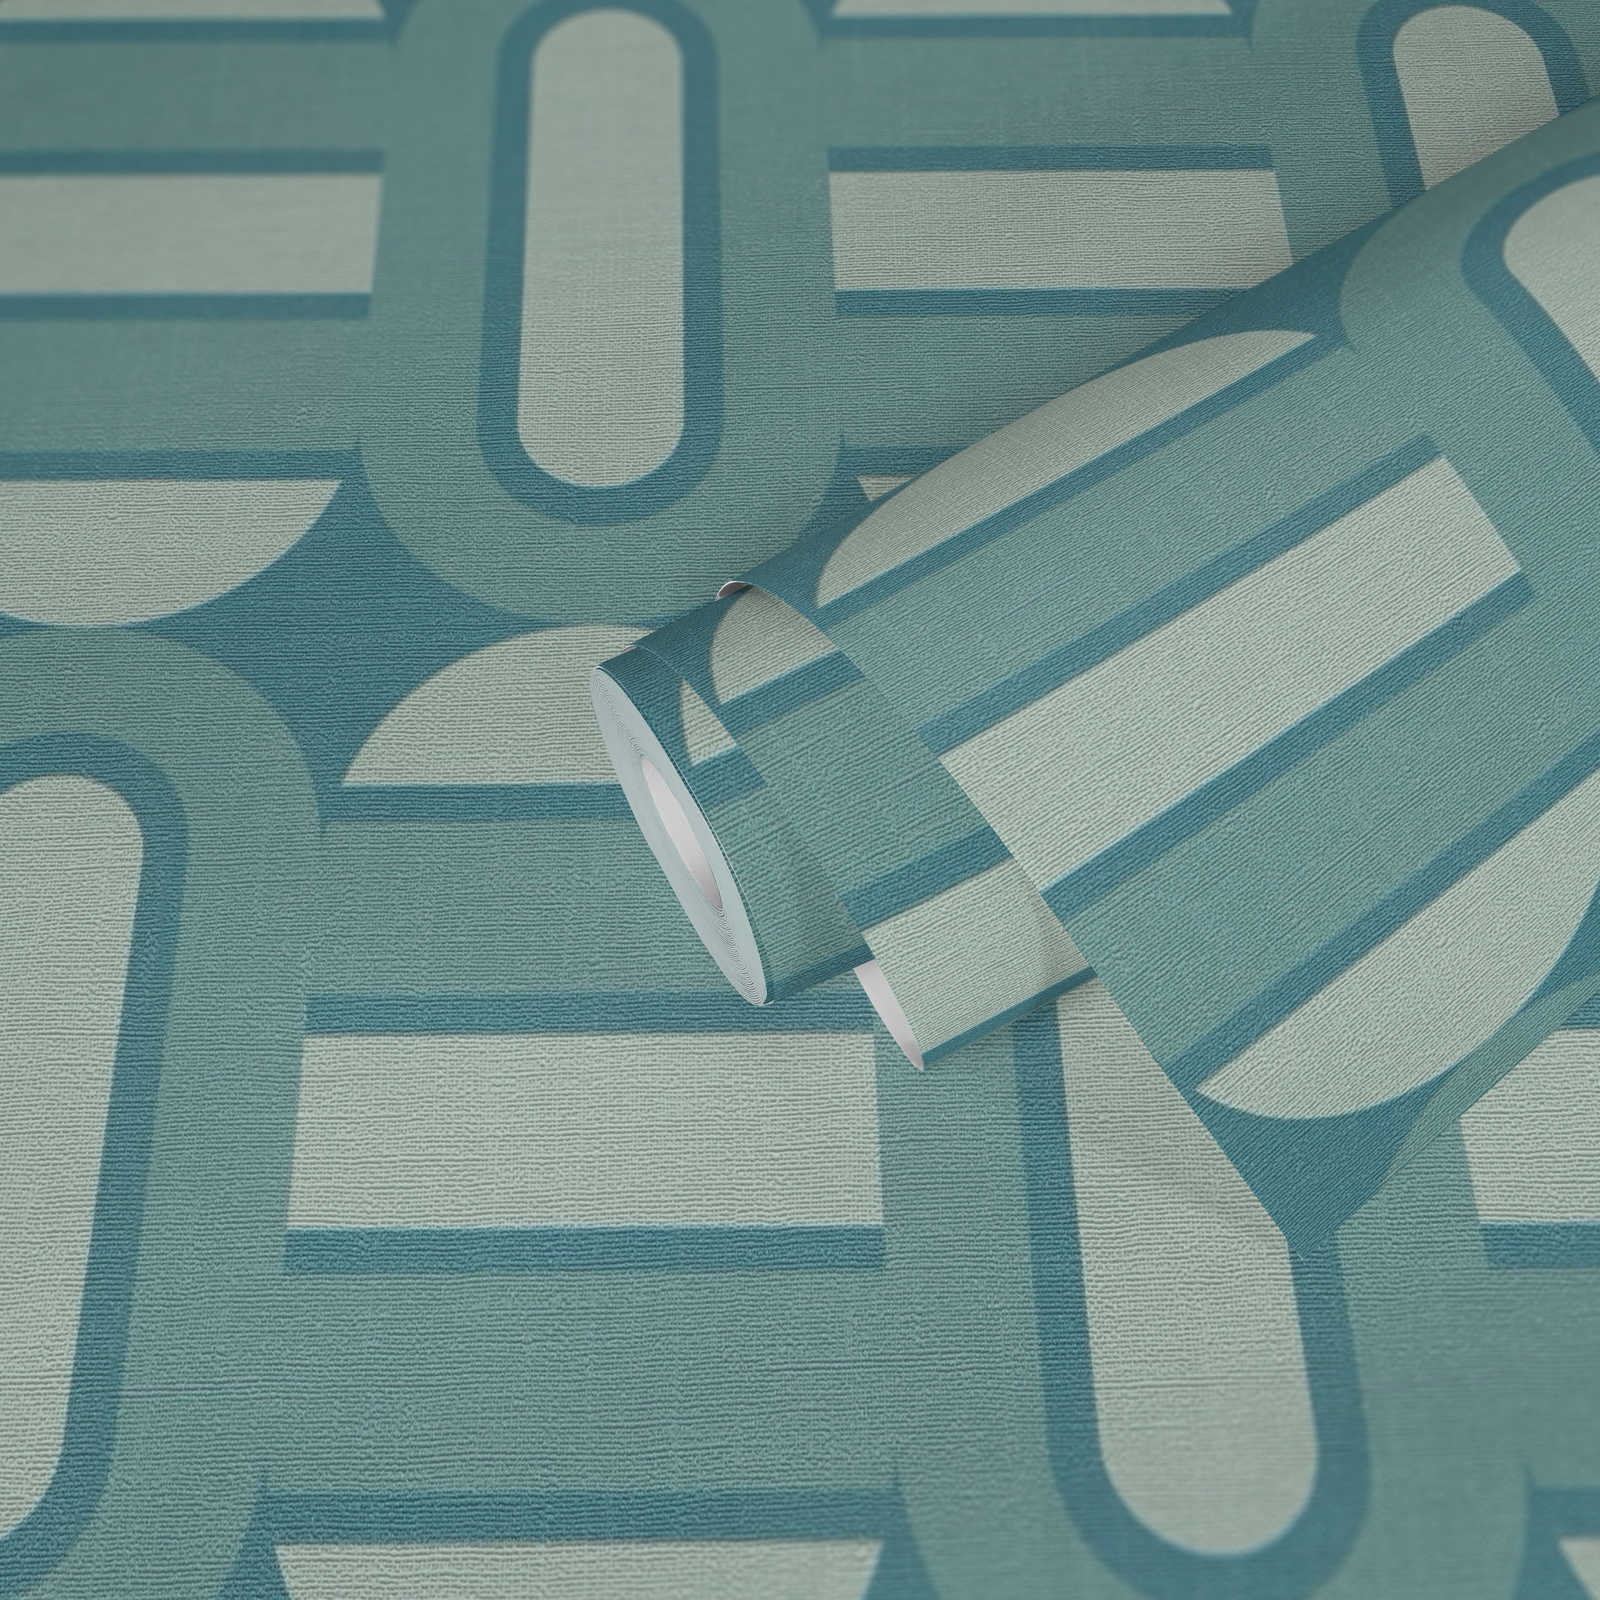             papier peint en papier légèrement structuré avec ovales et poutres de style rétro - turquoise, bleu, bleu clair
        